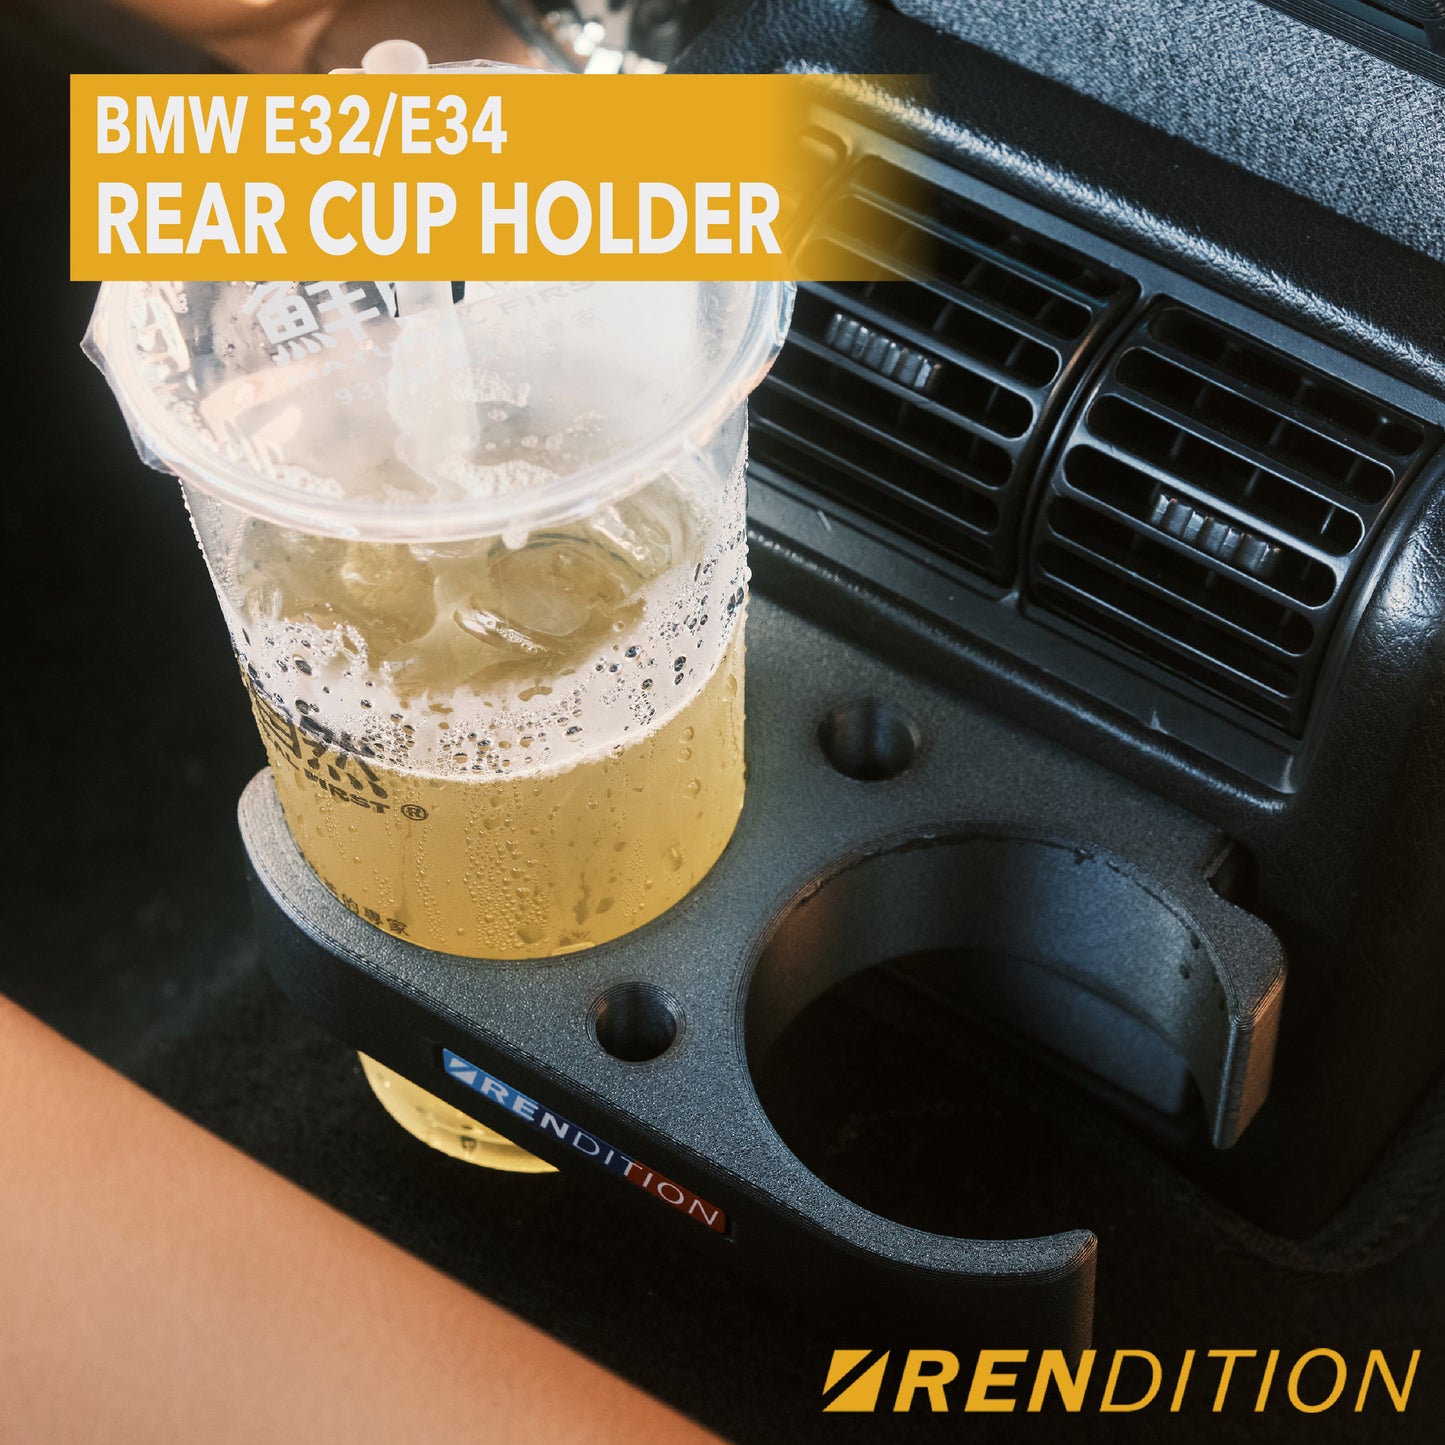 BMW E32/E34 REAR CUP HOLDER V2